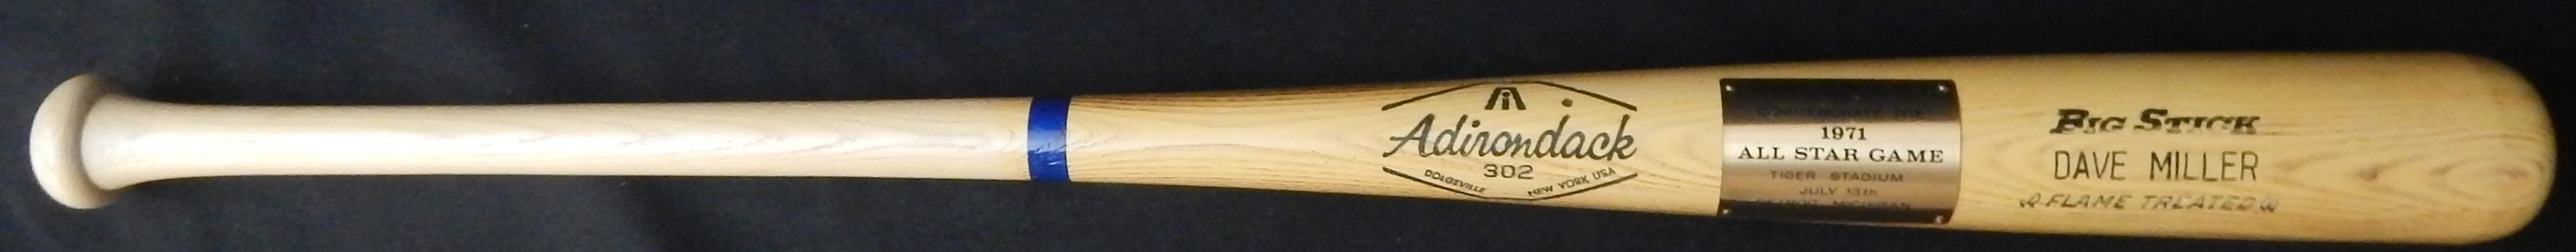 Baseball Memorabilia - 1971 All-Star Game Presentational Bat